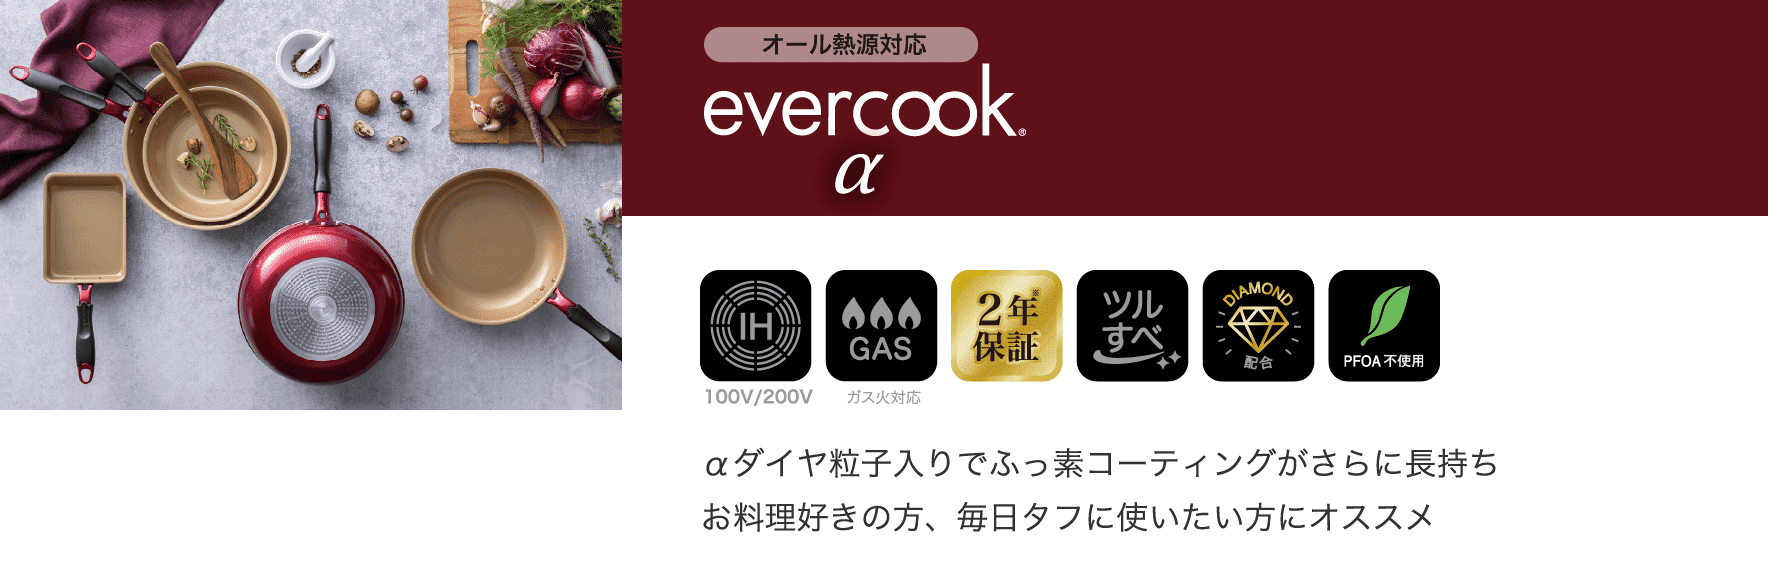 Α evercook stg-origin.aegpresents.com: evercook